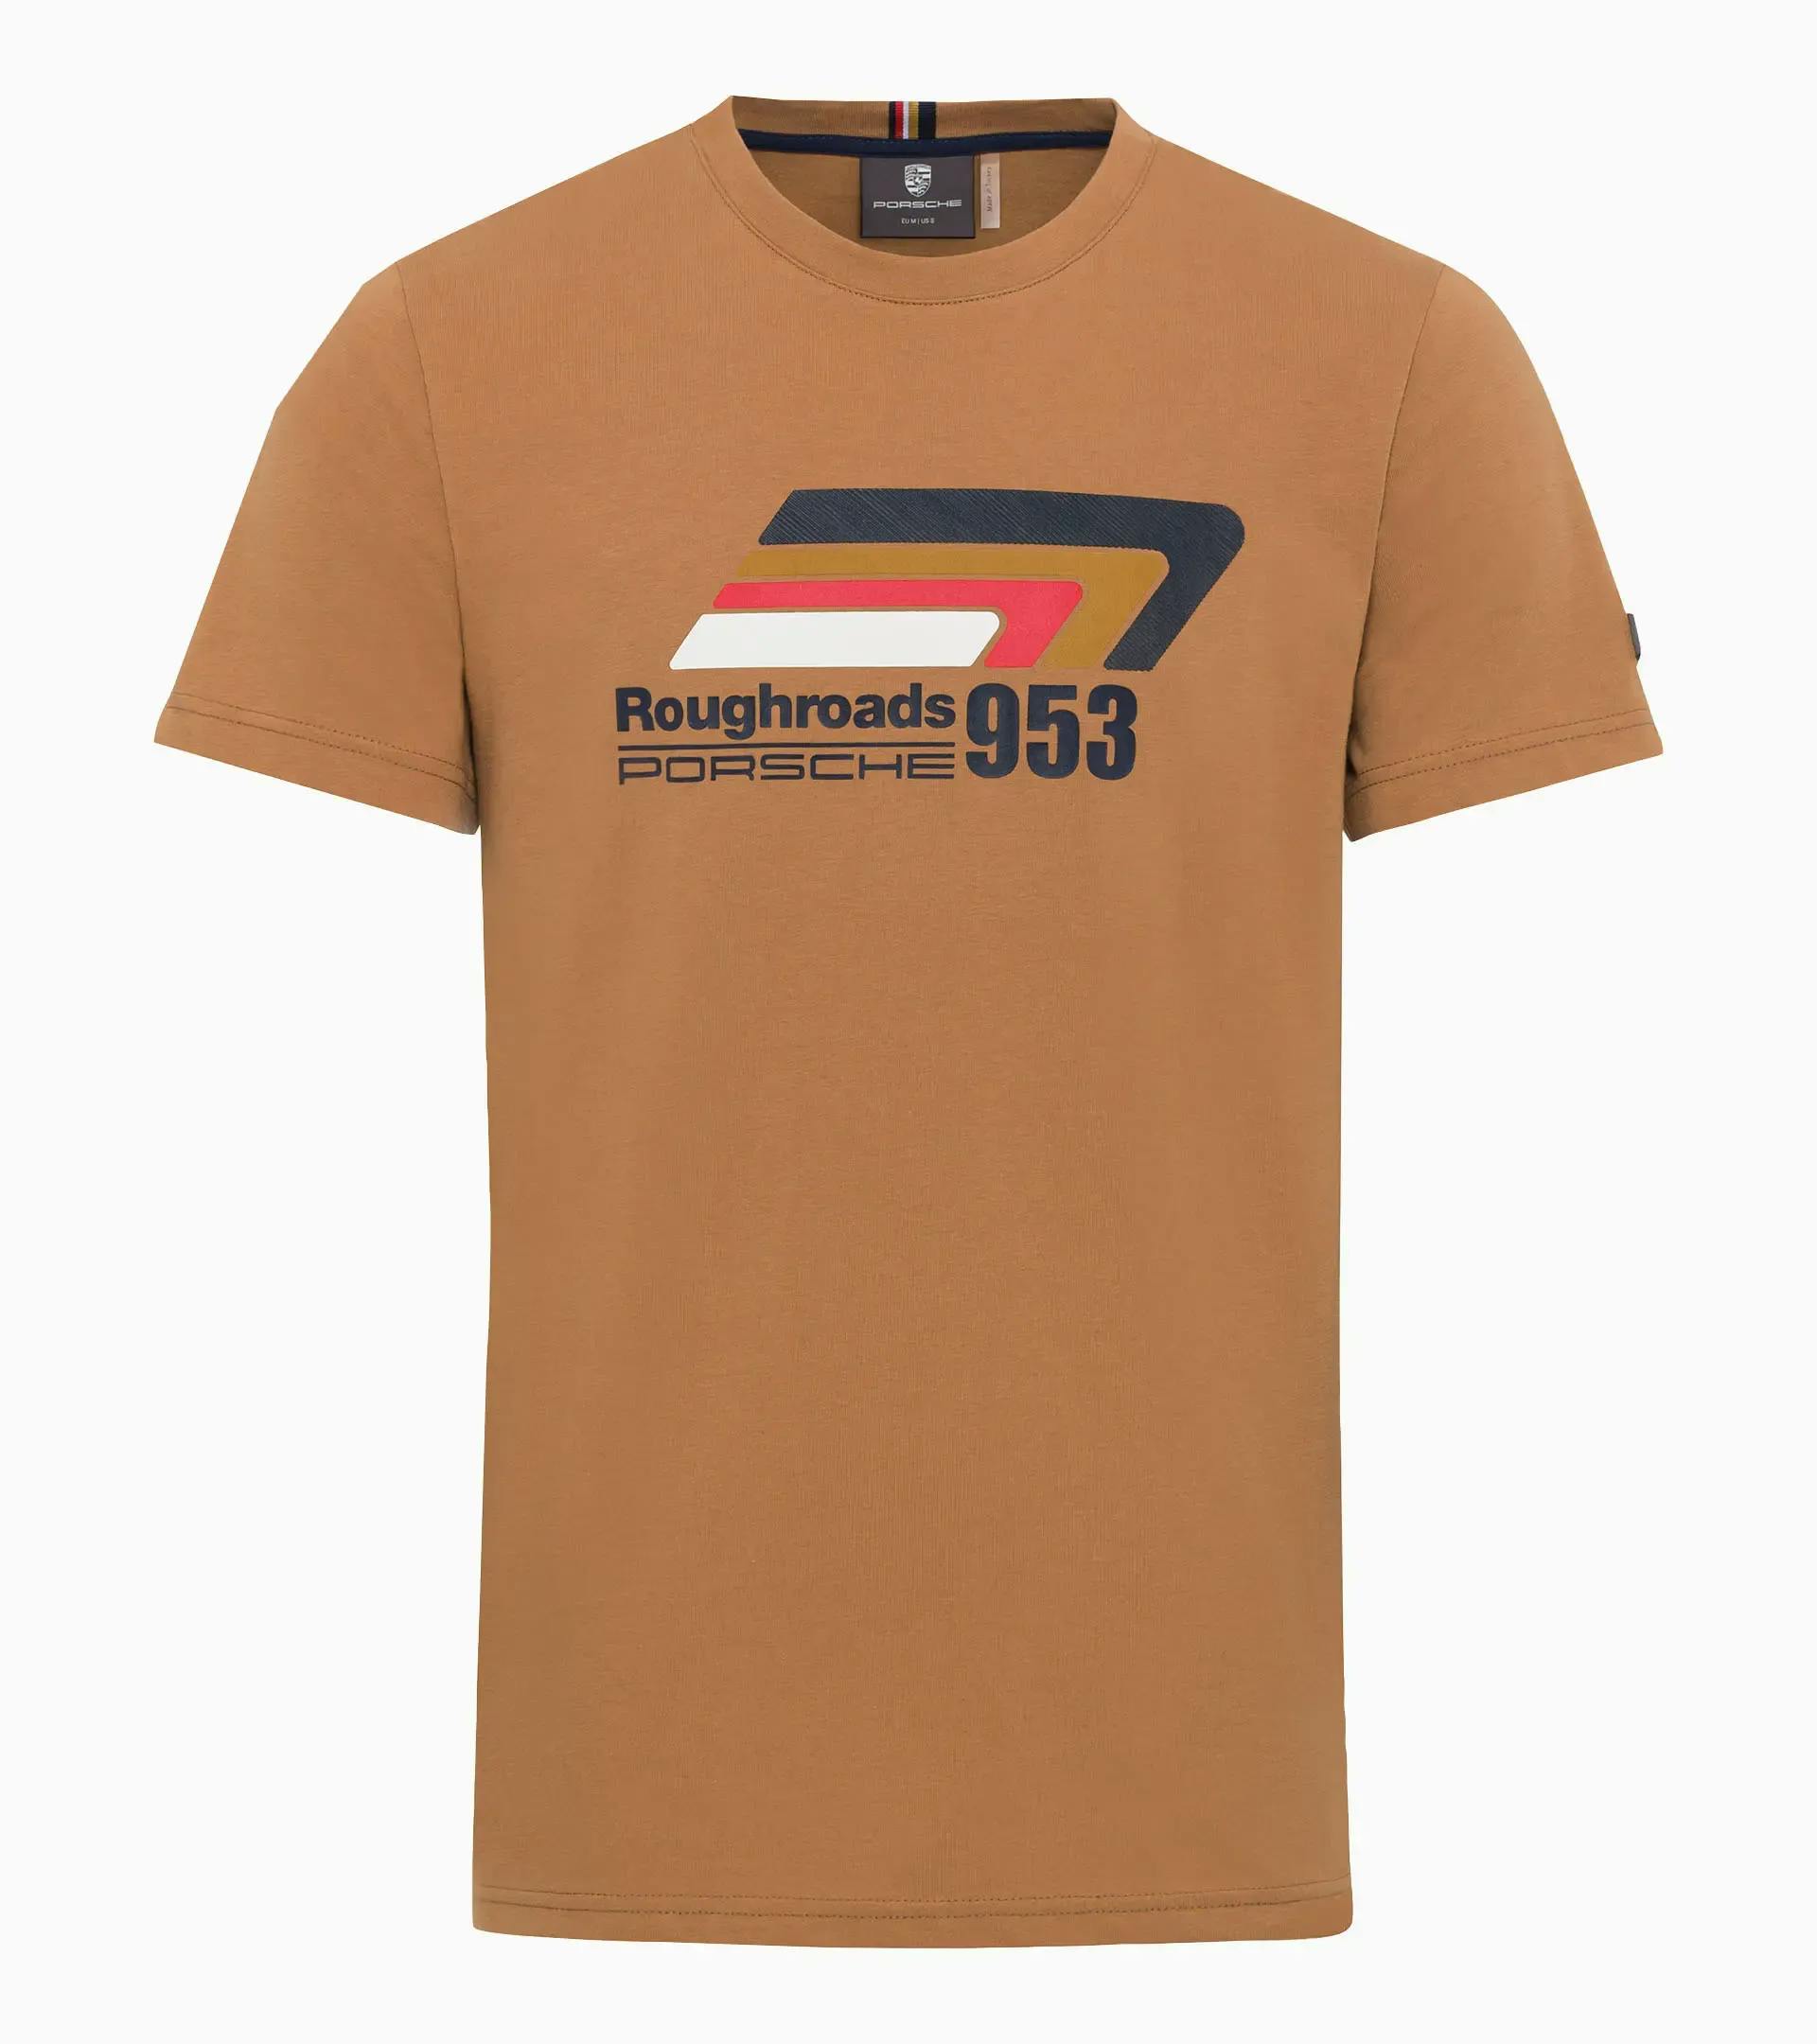 Camiseta unisex – Roughroads 1